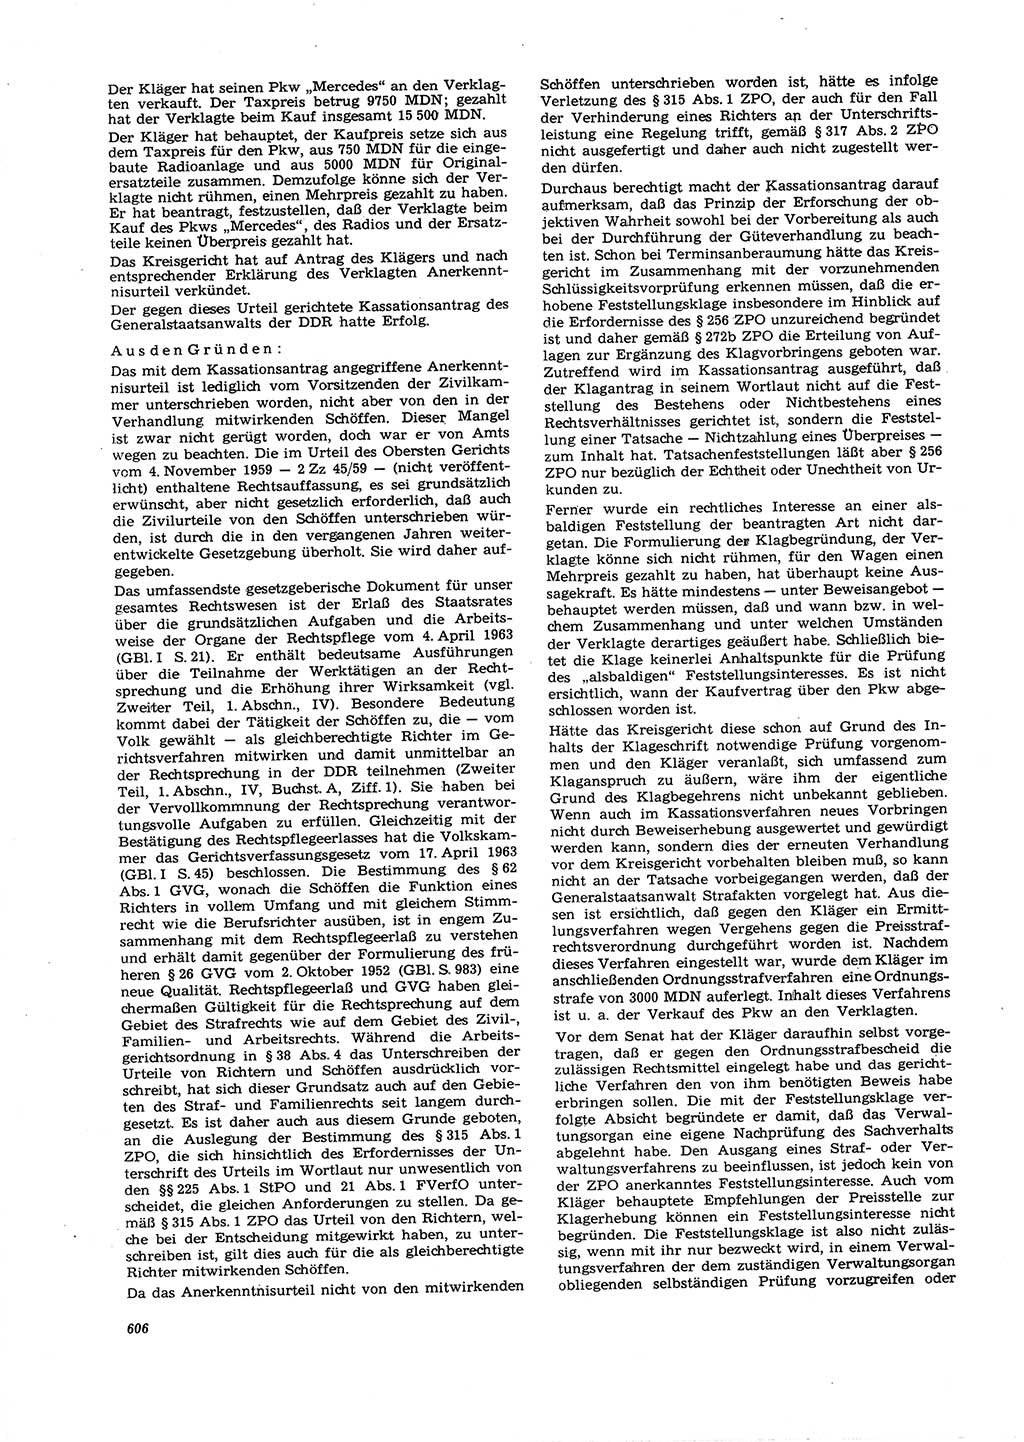 Neue Justiz (NJ), Zeitschrift für Recht und Rechtswissenschaft [Deutsche Demokratische Republik (DDR)], 21. Jahrgang 1967, Seite 606 (NJ DDR 1967, S. 606)